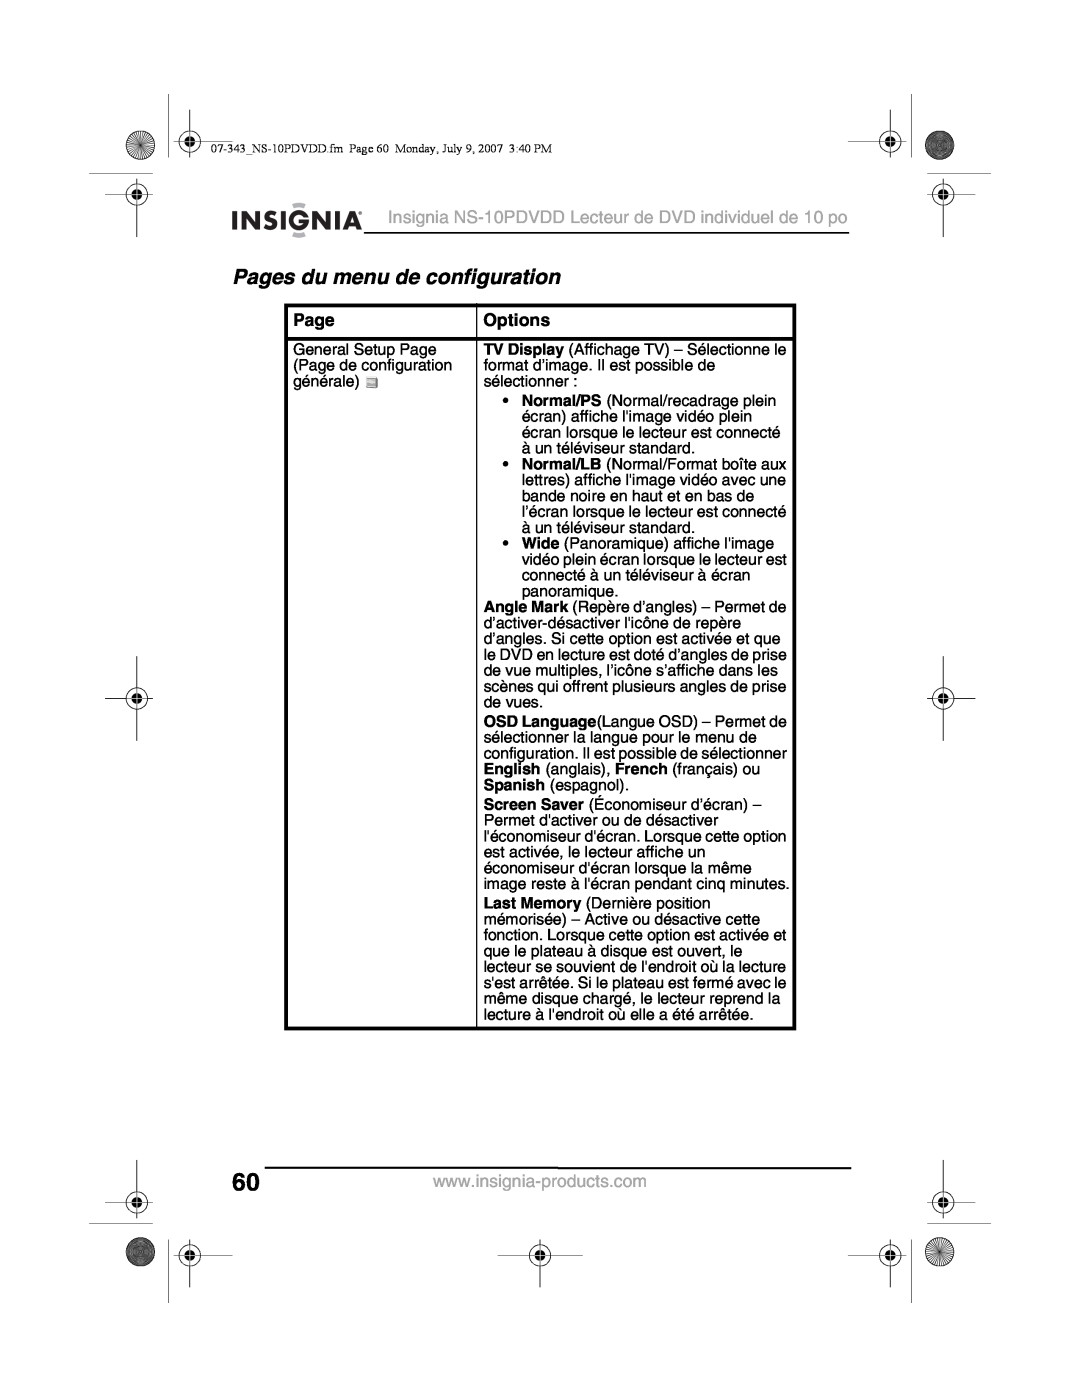 Insignia manual Pages du menu de configuration, Insignia NS-10PDVDD Lecteur de DVD individuel de 10 po, Options 